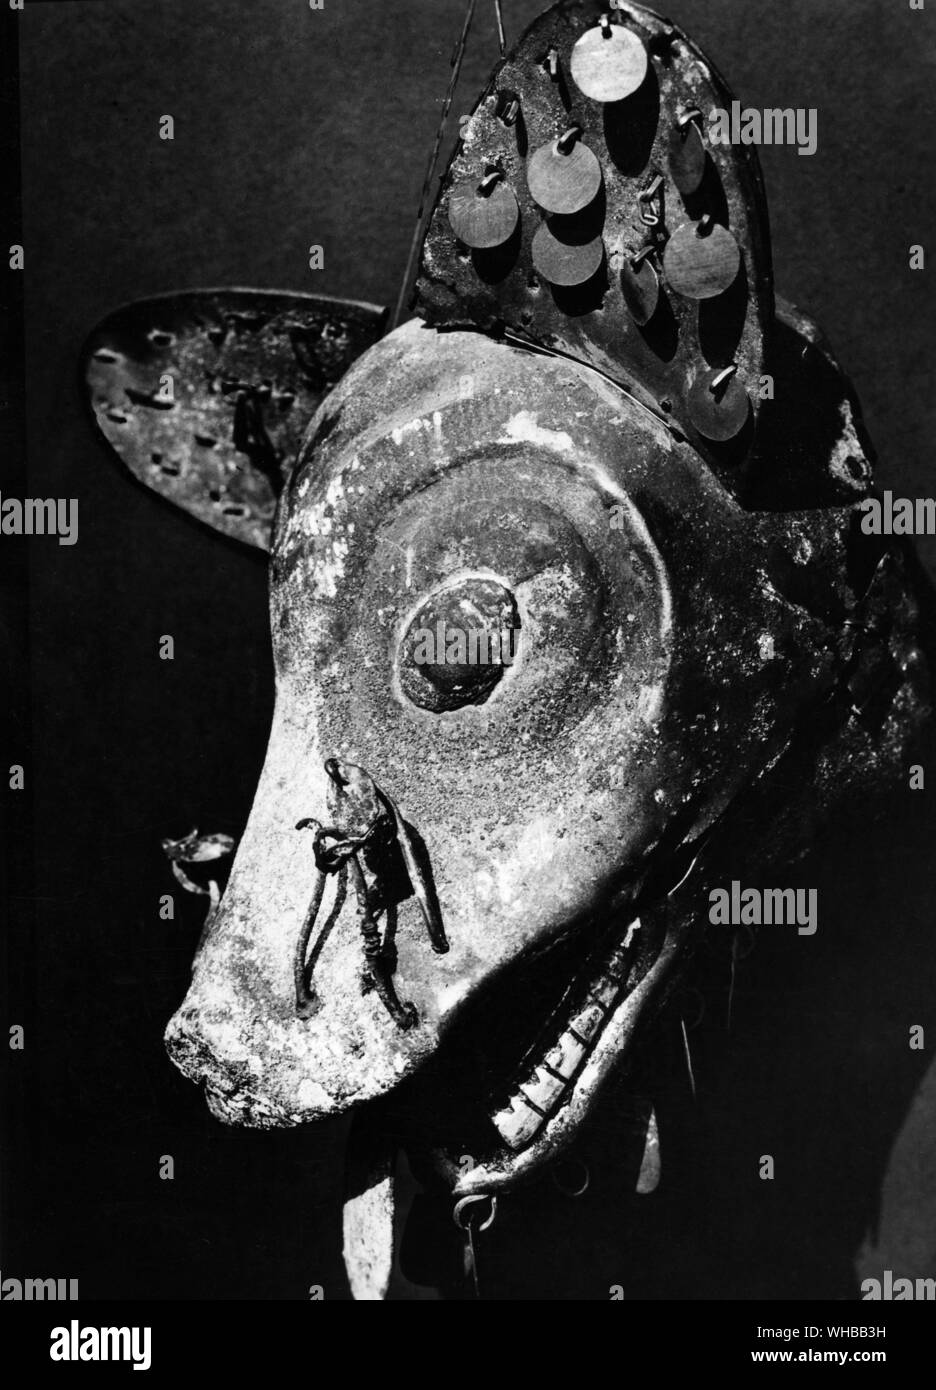 Fox's Kopf, Moche Zivilisation, der nördlichen Küste von Peru, Südamerika. in der Pyramide des Mondes ausgegraben. Länge 6 Zoll oder 15,2 cm. Field Museum of Natural History, Chicago, USA Stockfoto